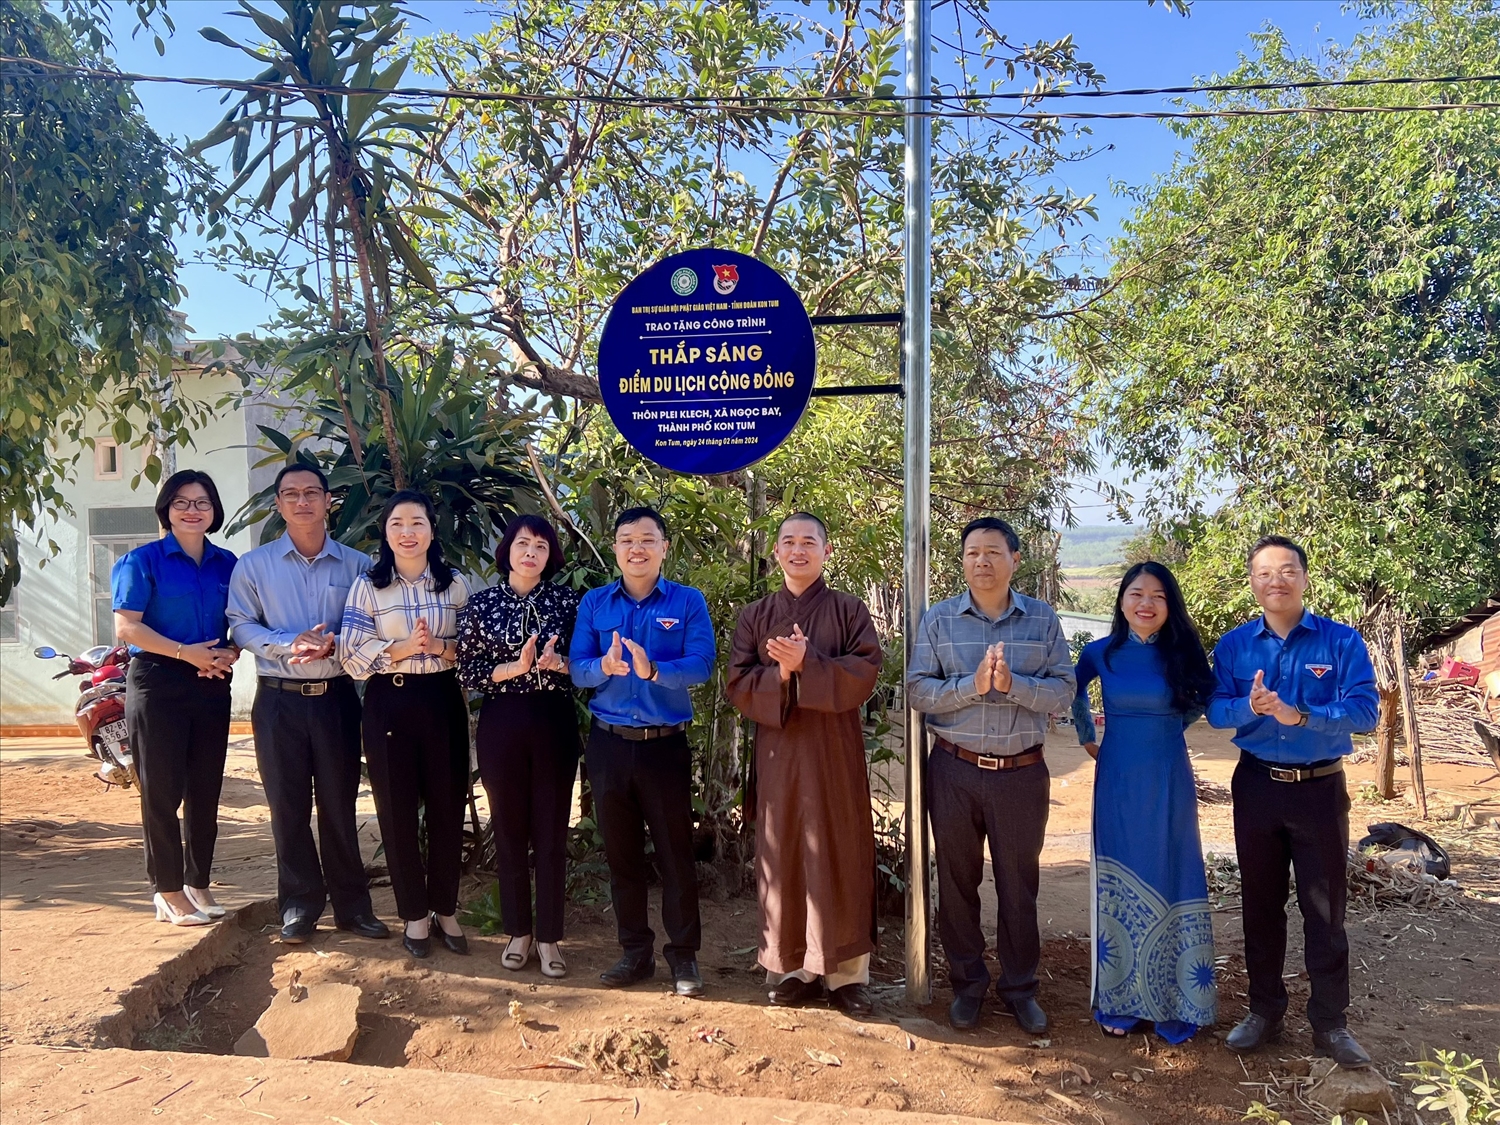 Tỉnh đoàn Kon Tum trao tặng công trình thắp sáng Điểm du lịch cộng đồng thôn Plei Klech, xã Ngọc Bay, thành phố Kon Tum 